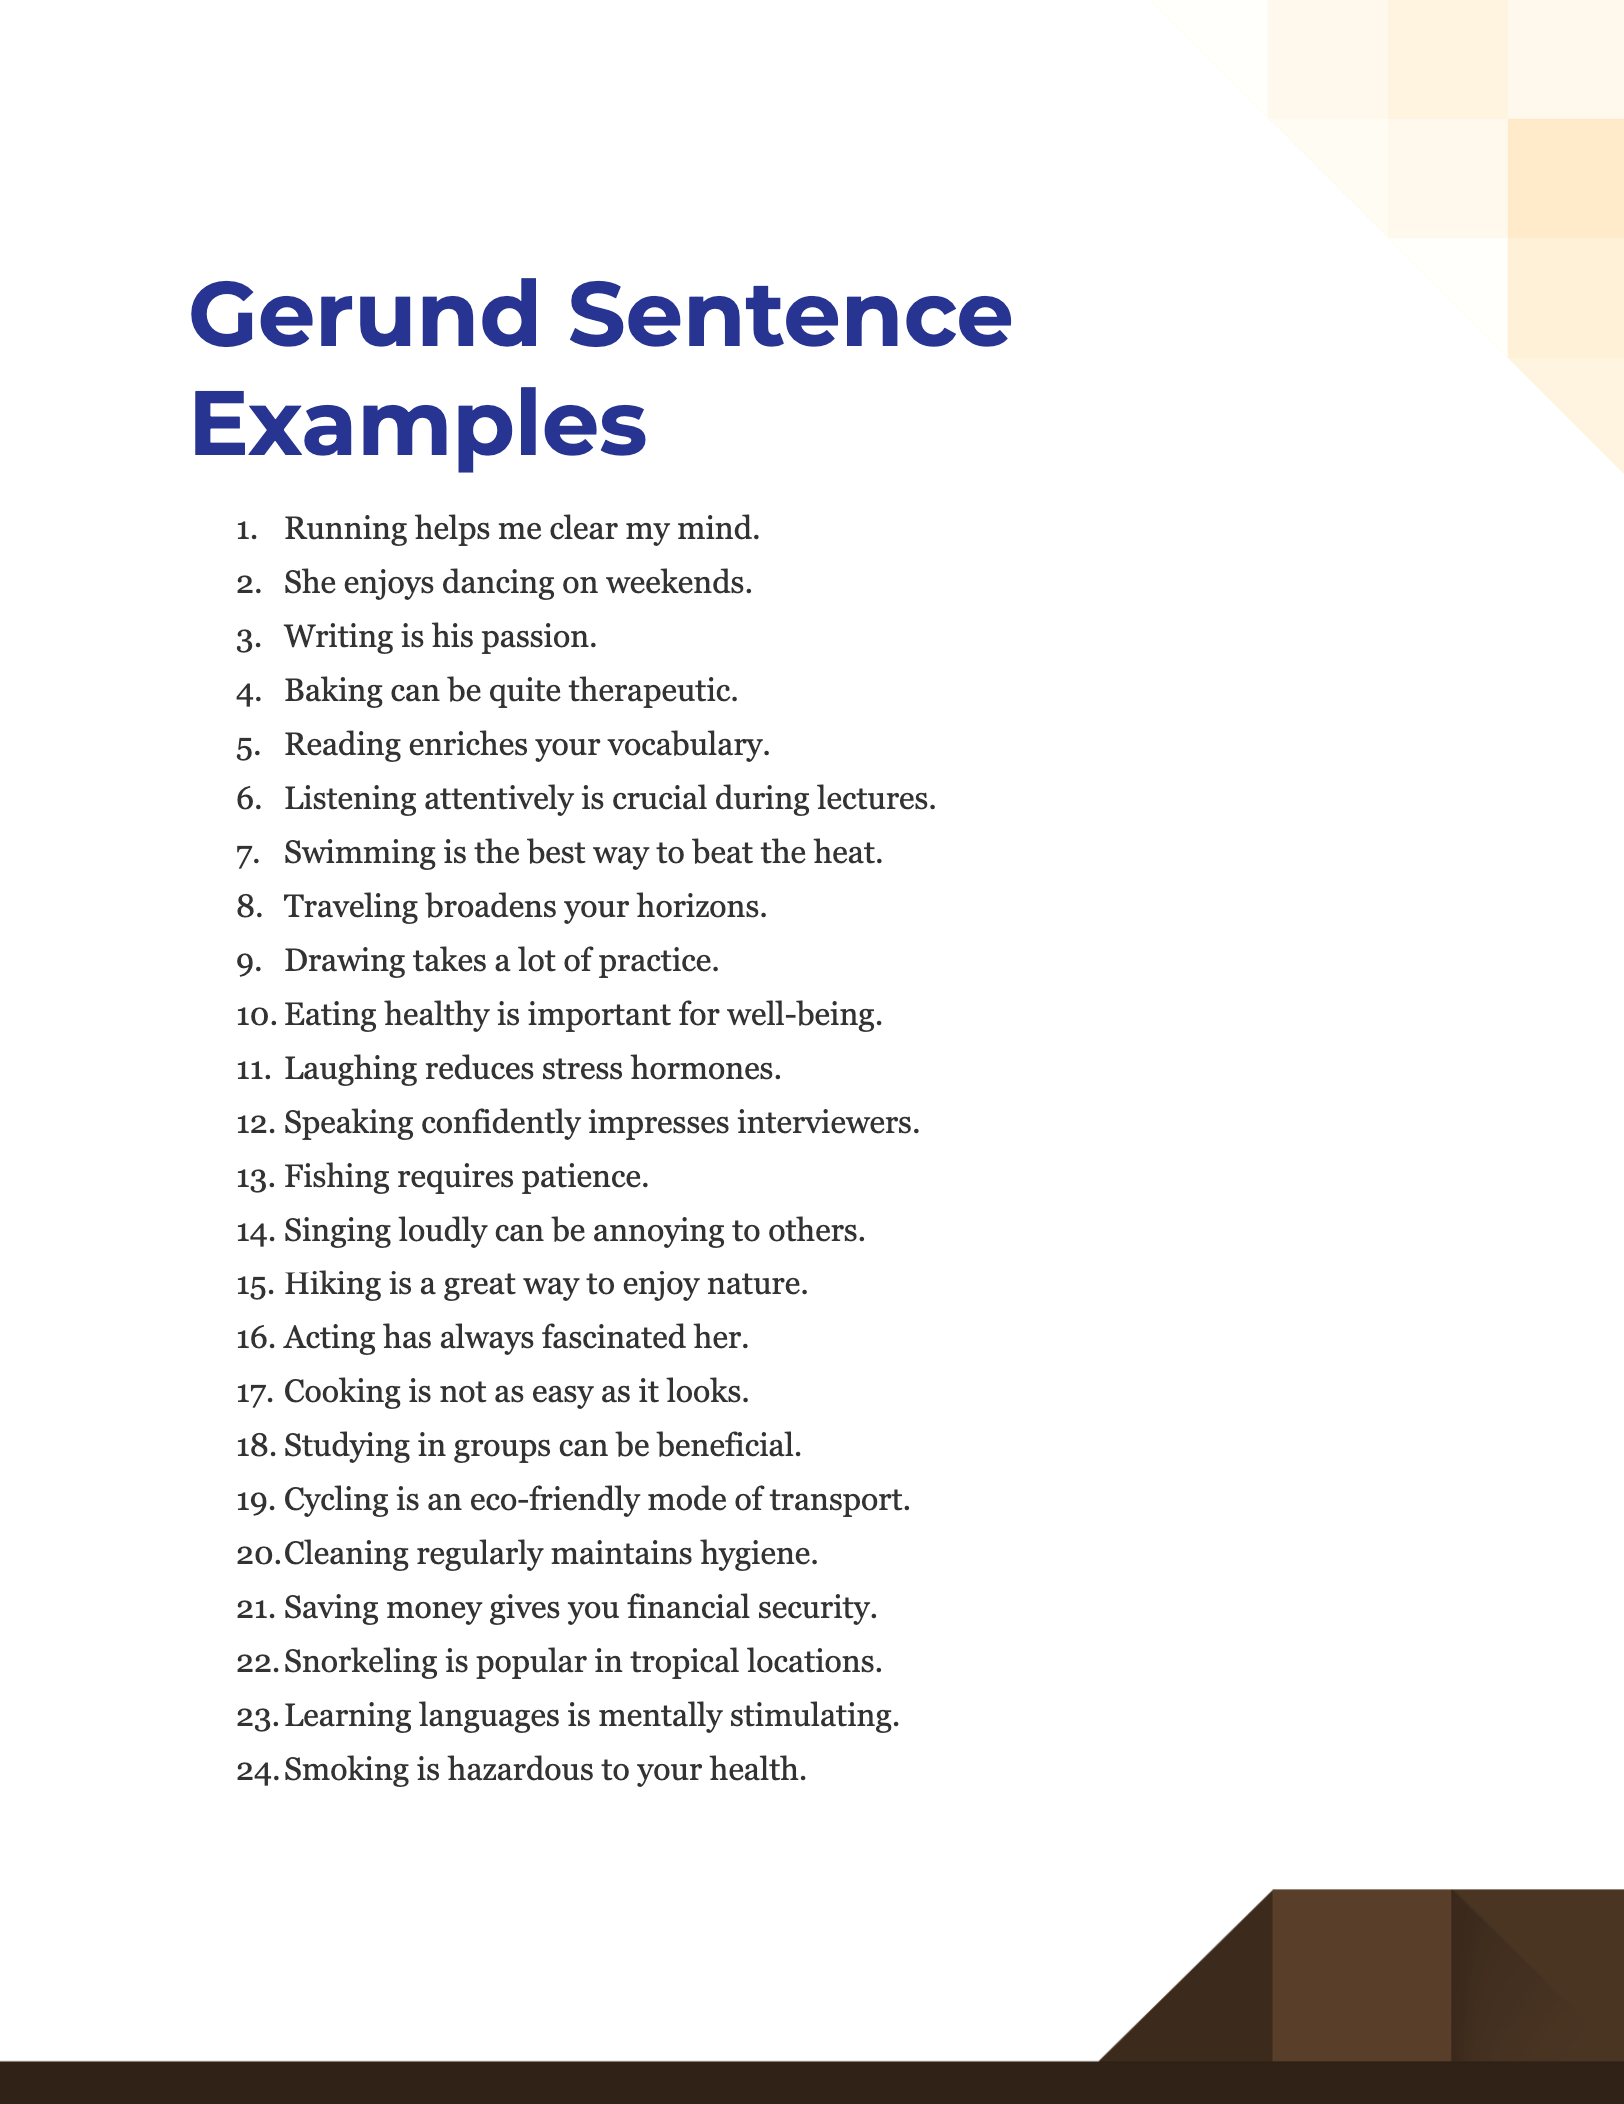 gerund sentence